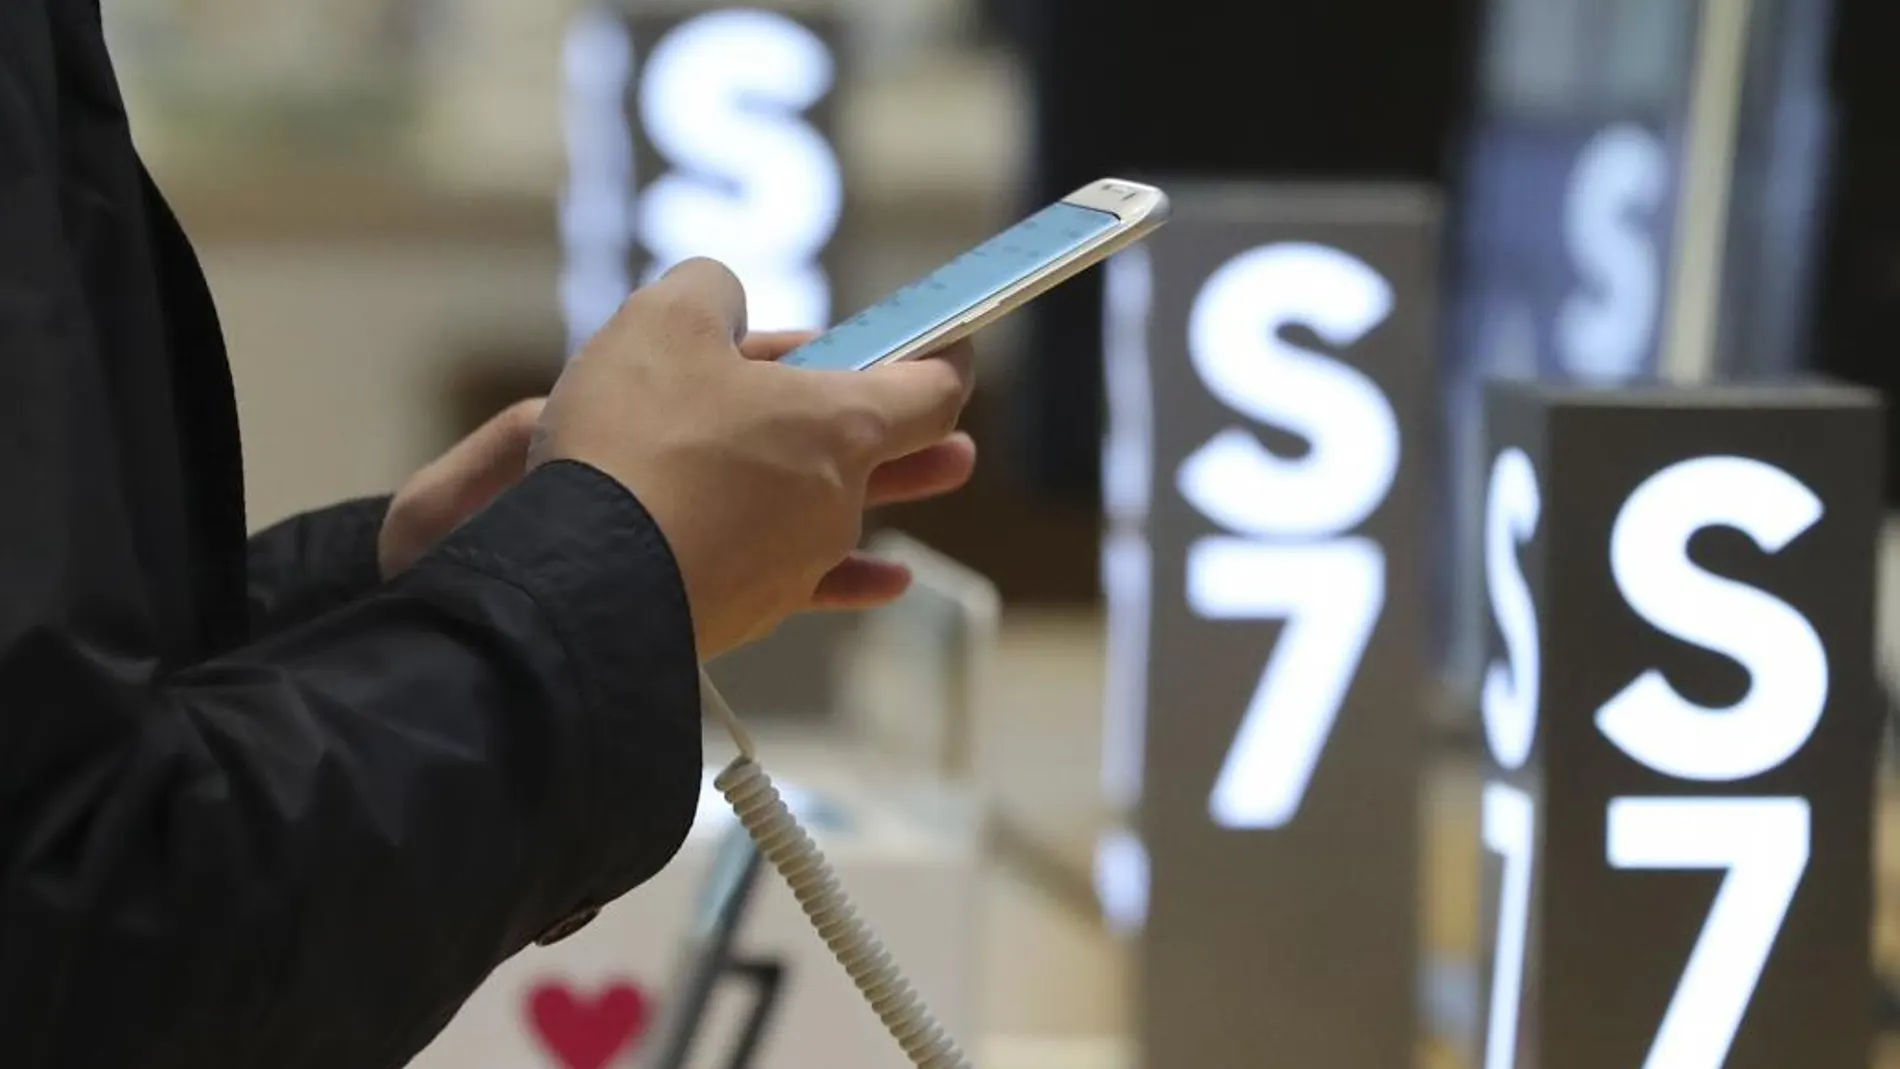 EEUU prohíbe subir al avión con el Samsung Note 7